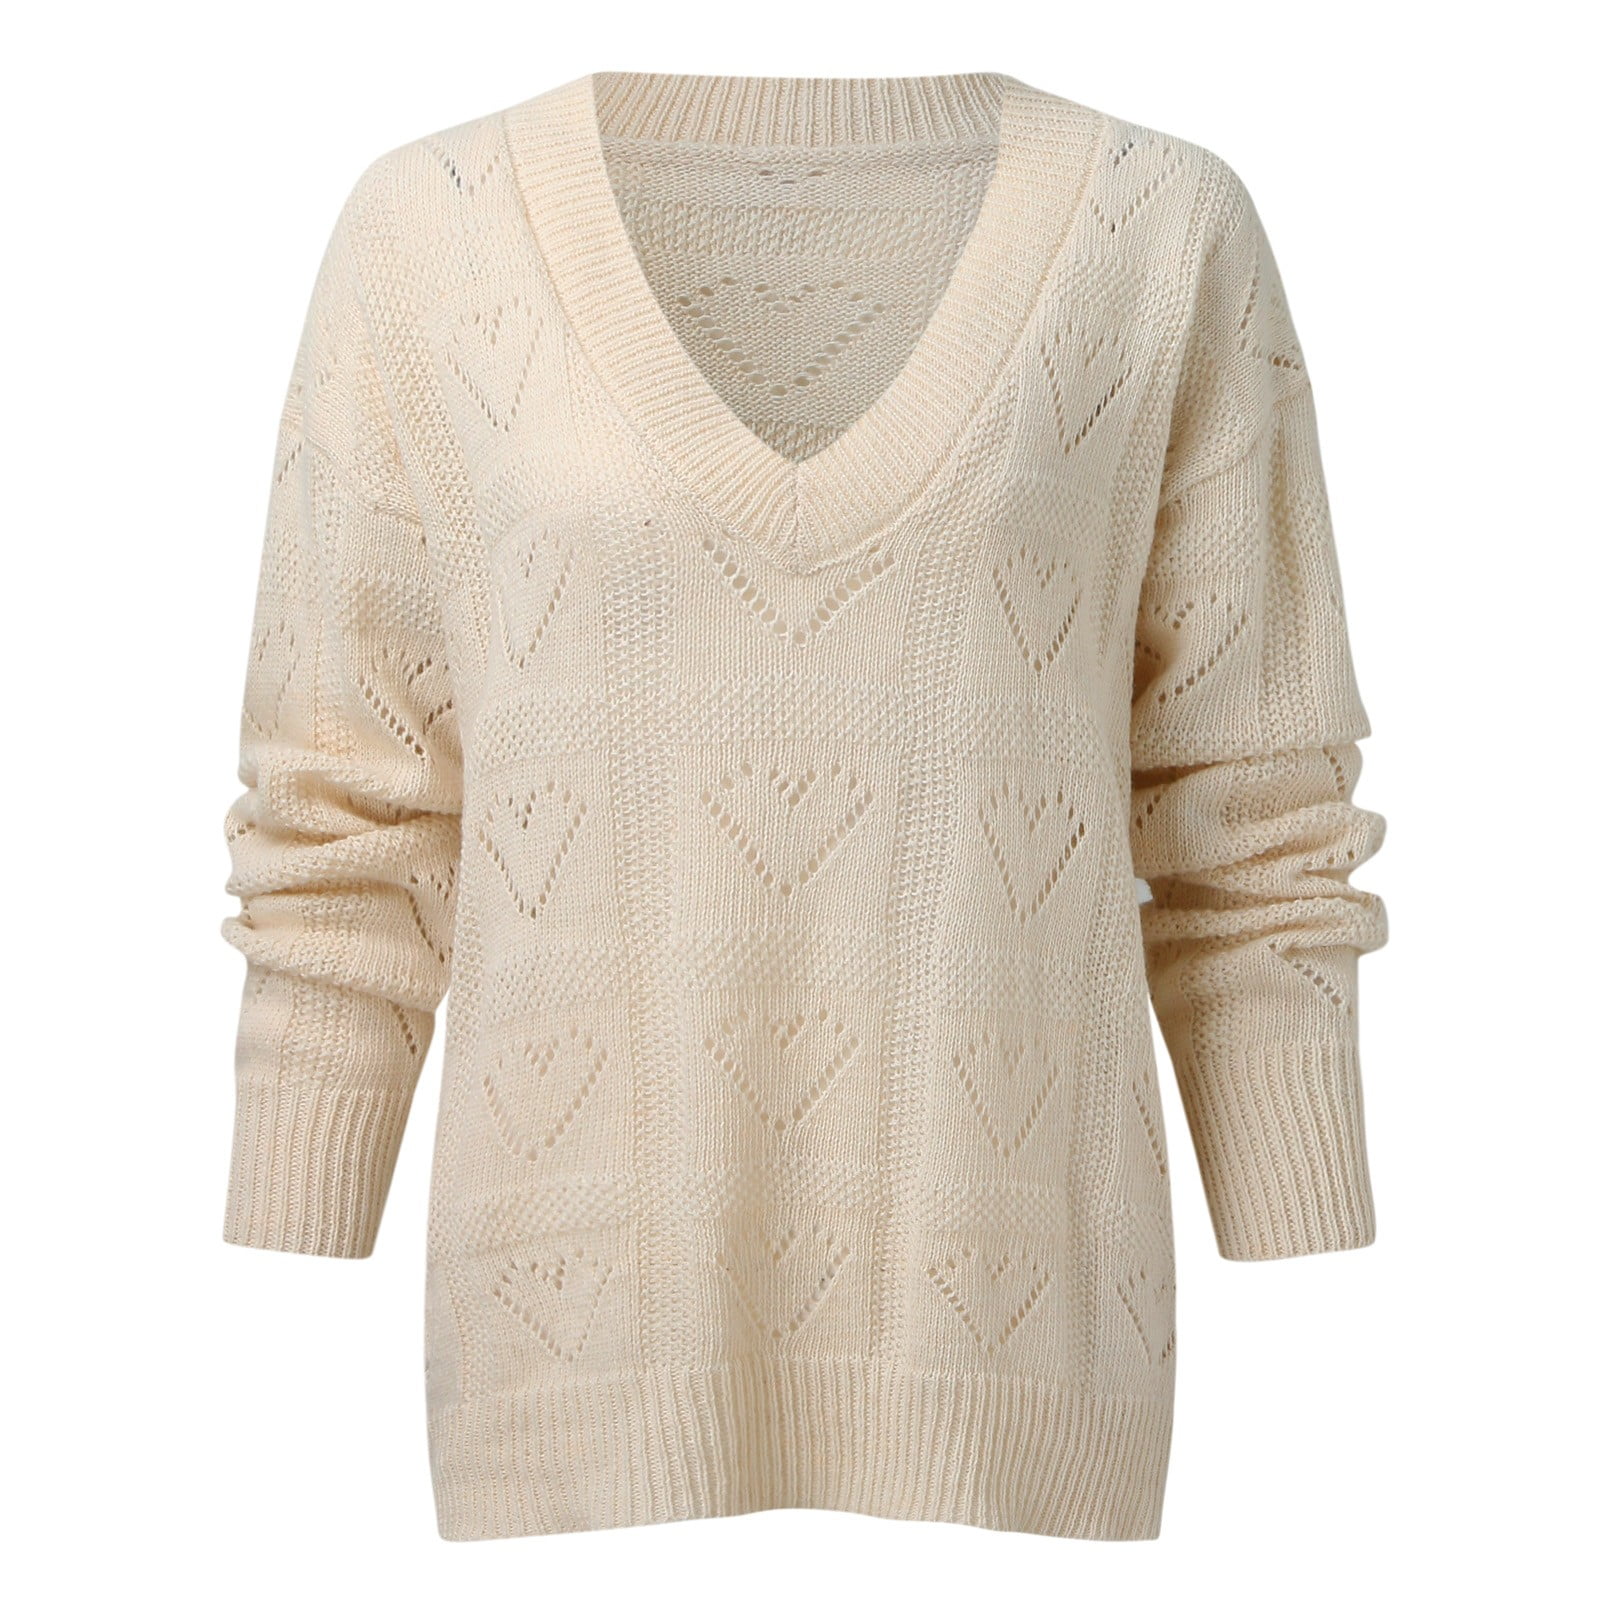 adviicd Goth Sweater Womens Fuzzy Knitted Sweater Sherpa Fleece Side Slit  Full Sleeve Jumper Outwears - Walmart.com